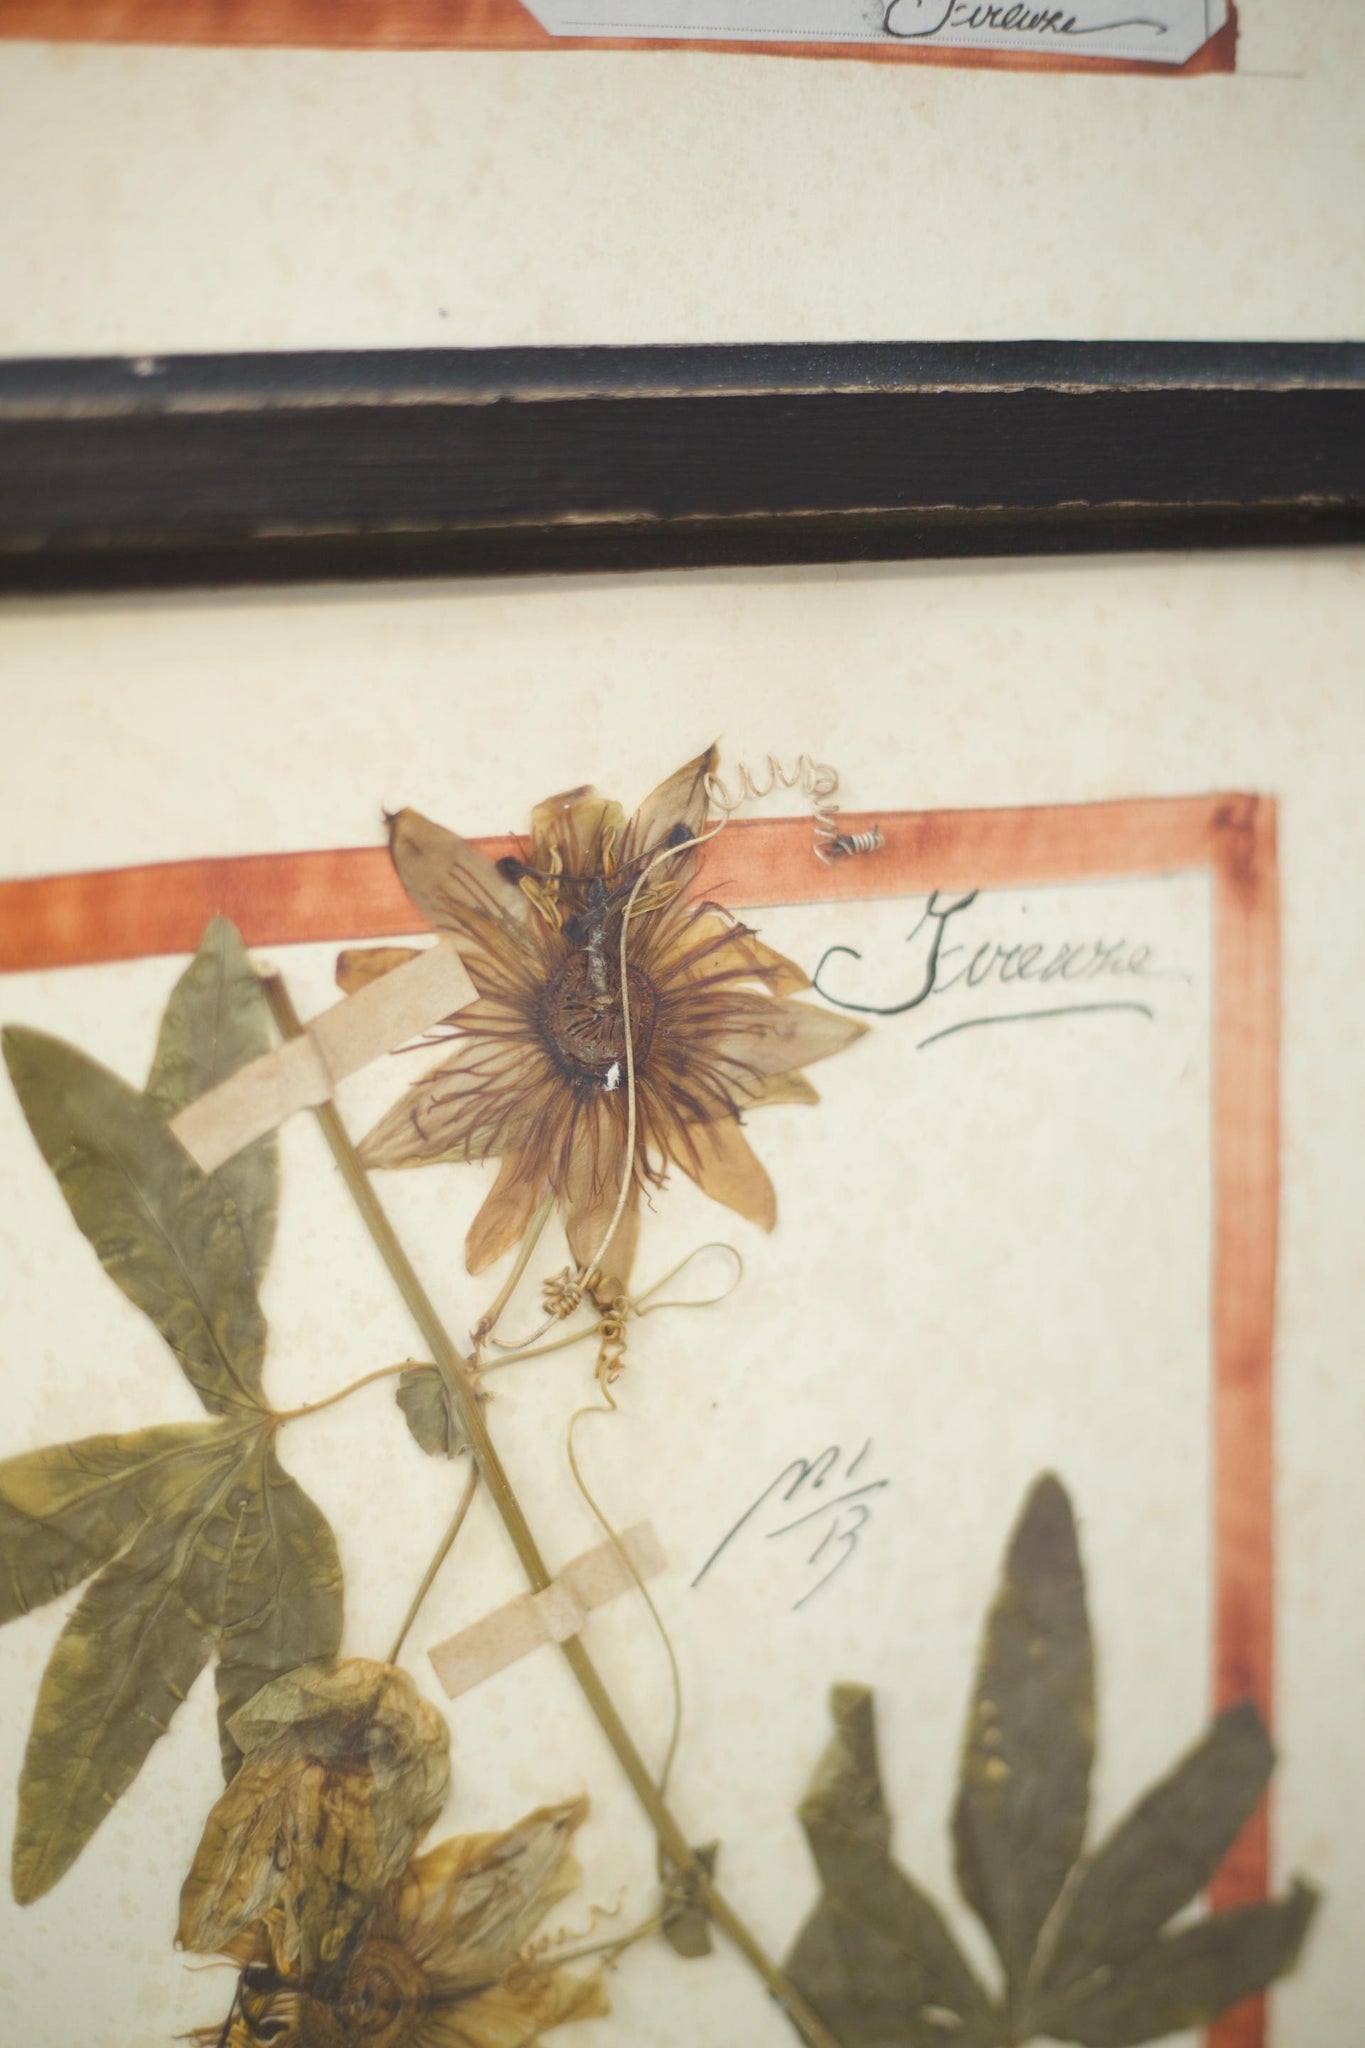 20th century Herbarium Quad Frame No 1